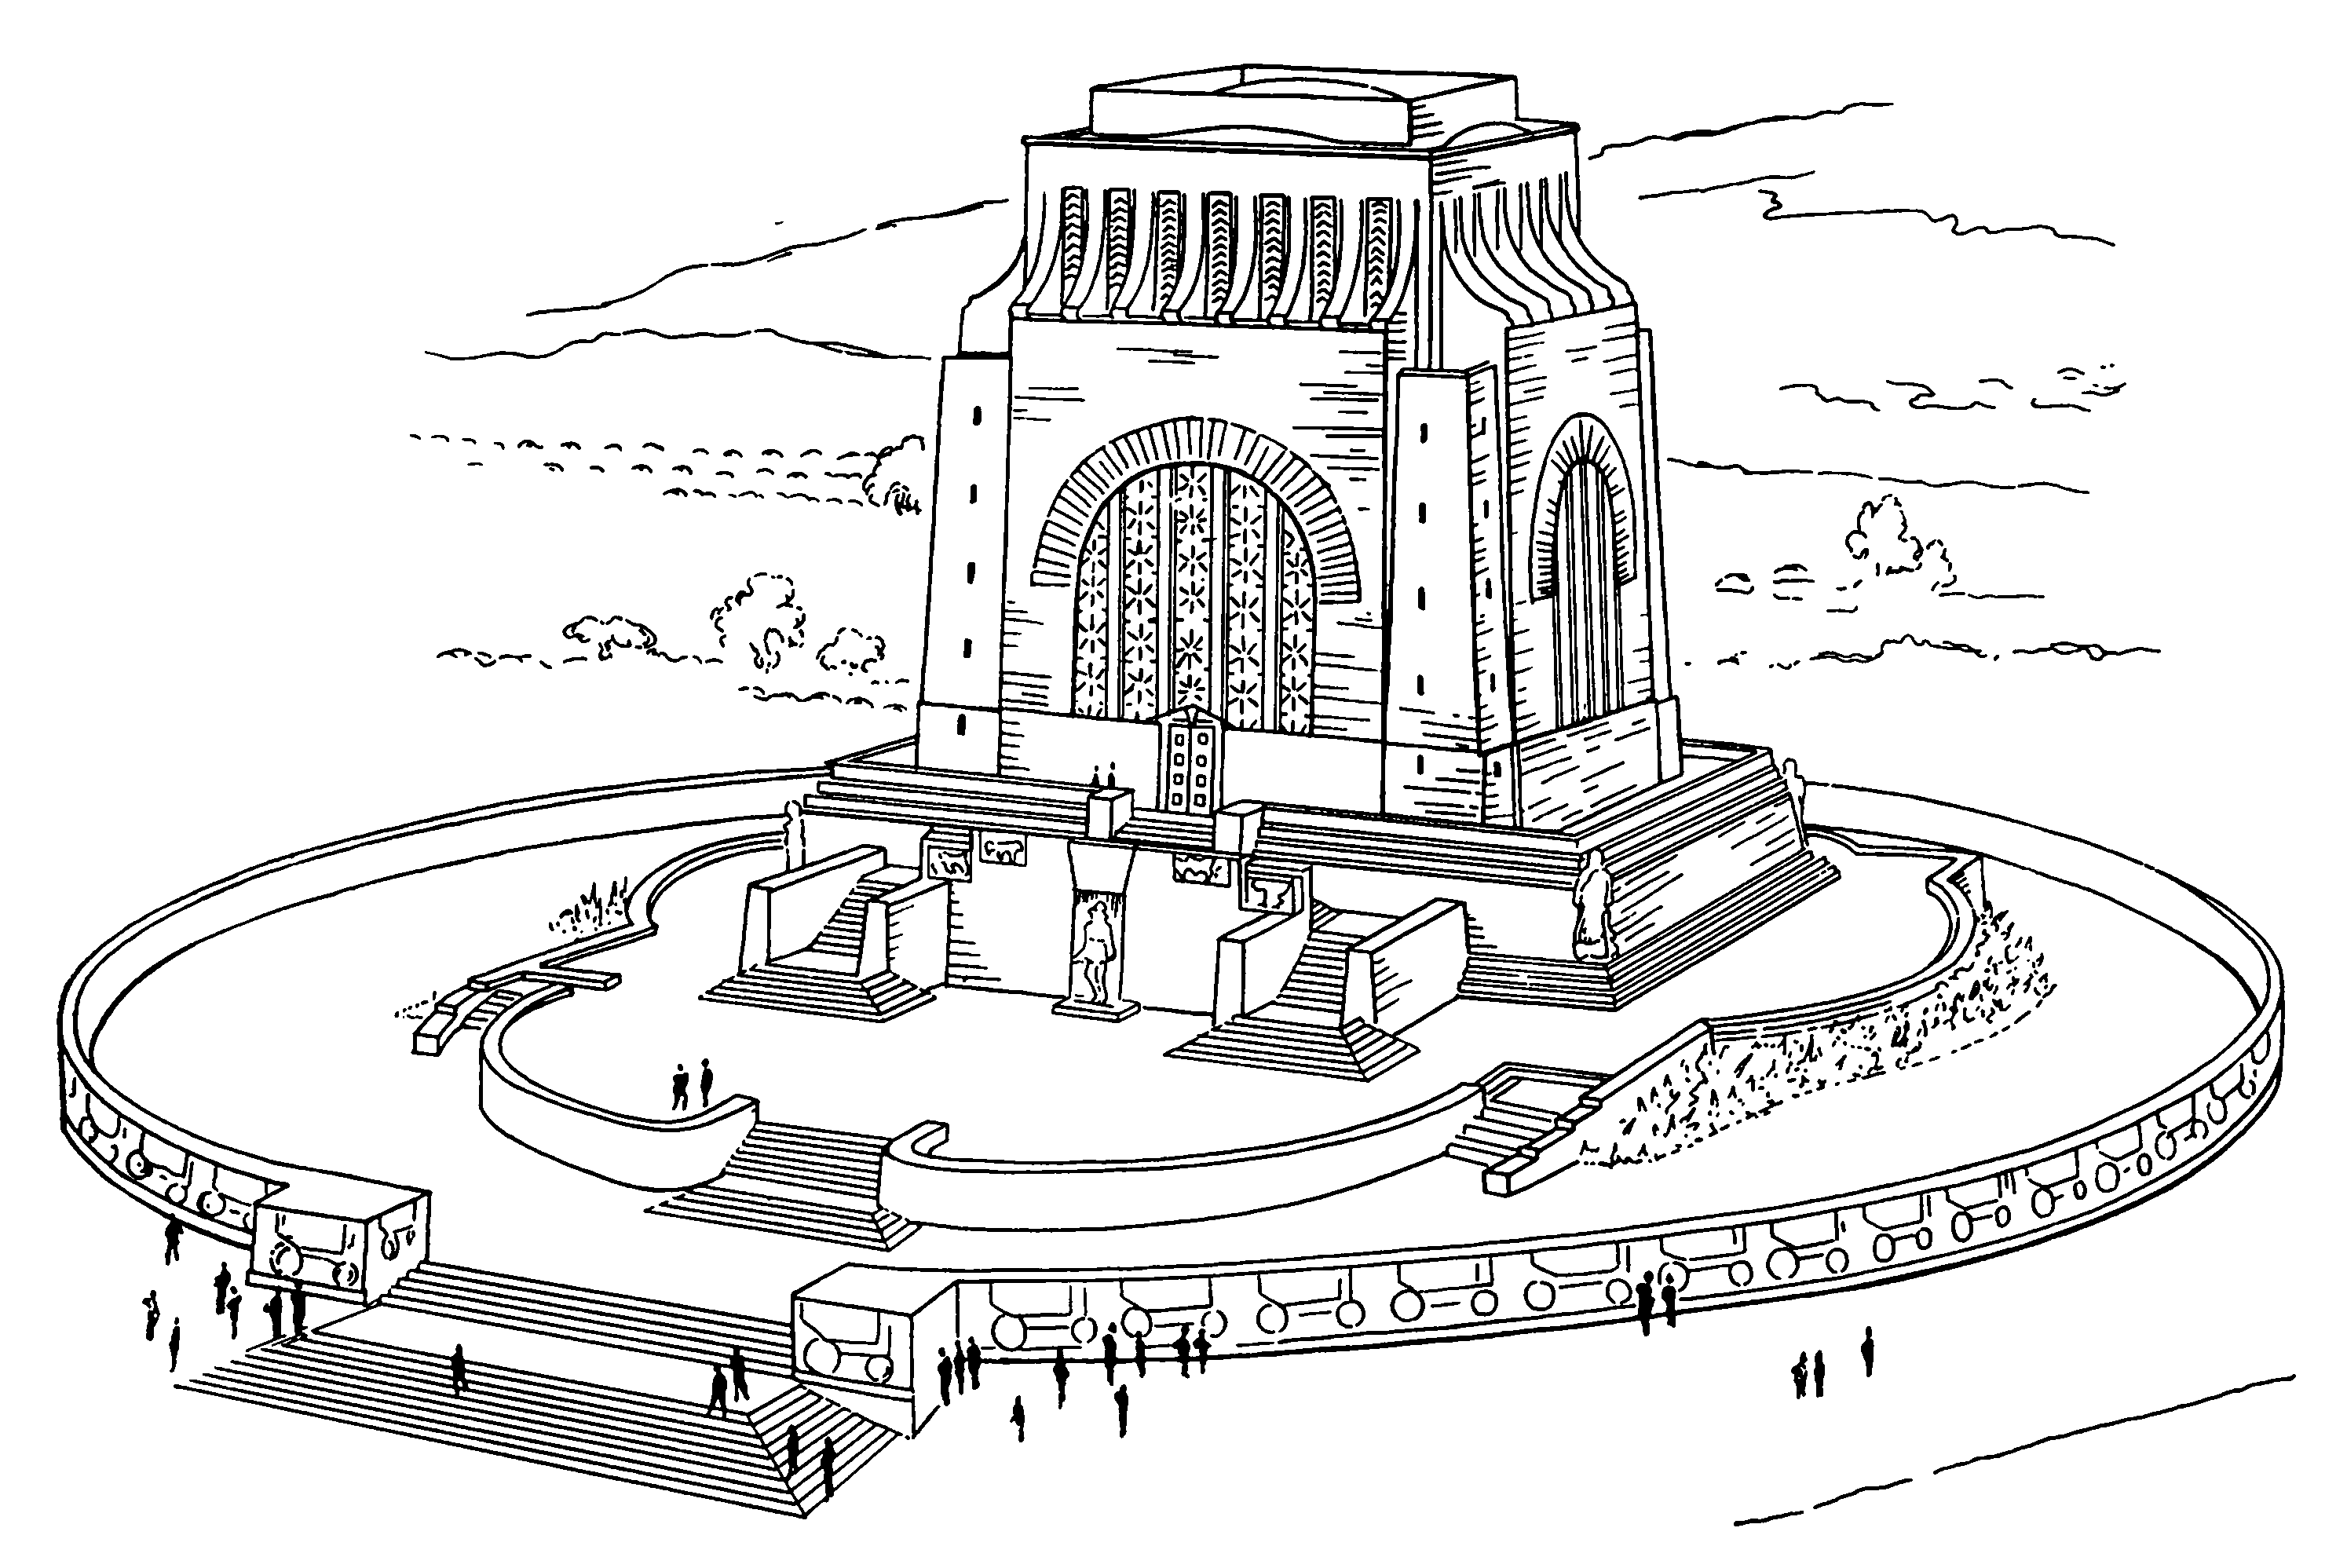 1. Претория. Монумент в память первых поселенцев Трансвааля, 1949 г.